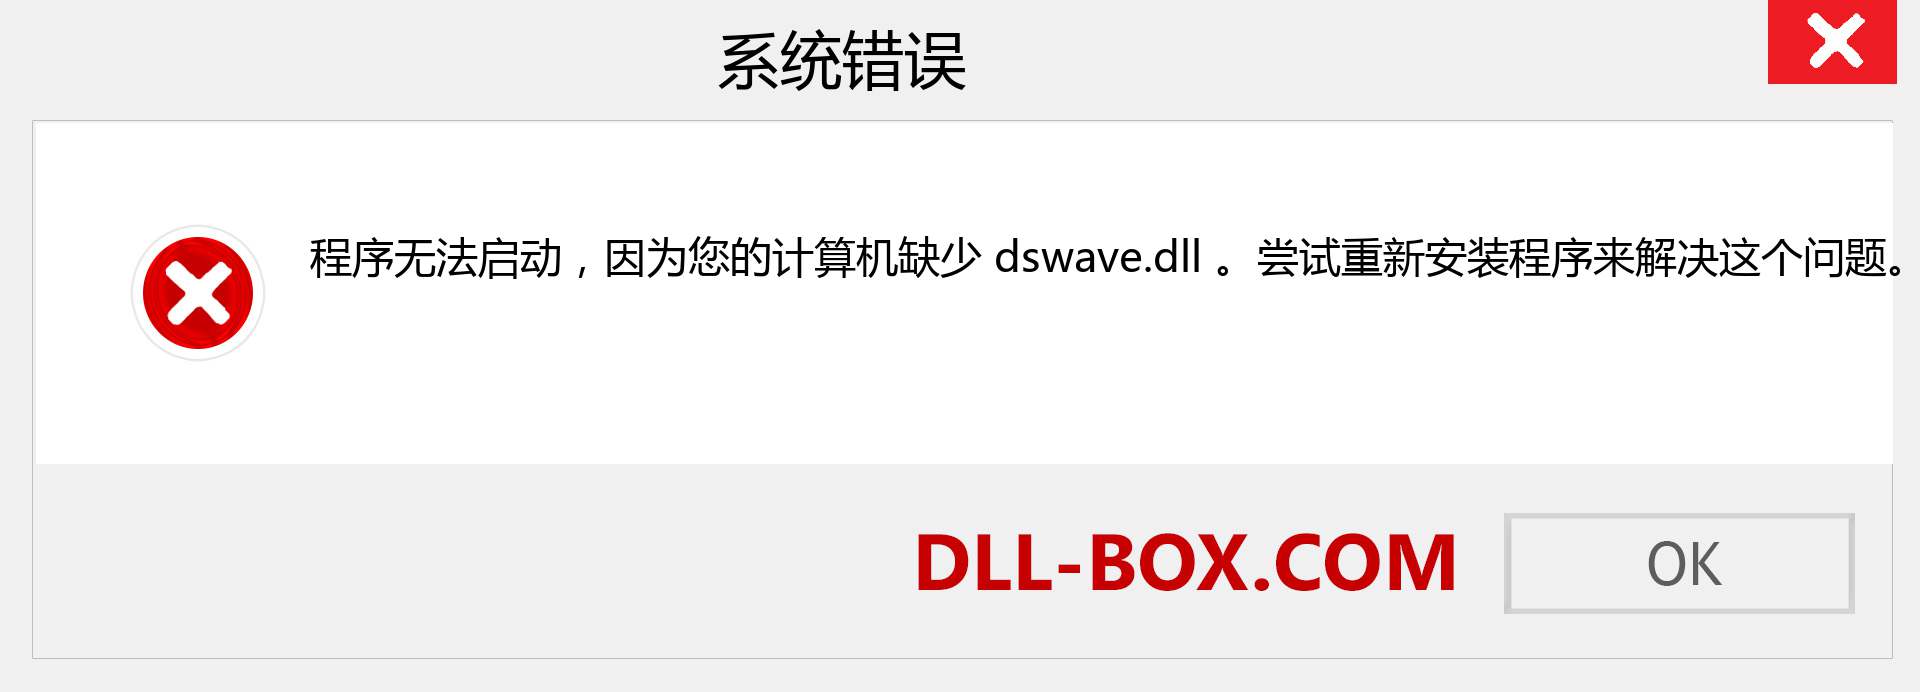 dswave.dll 文件丢失？。 适用于 Windows 7、8、10 的下载 - 修复 Windows、照片、图像上的 dswave dll 丢失错误